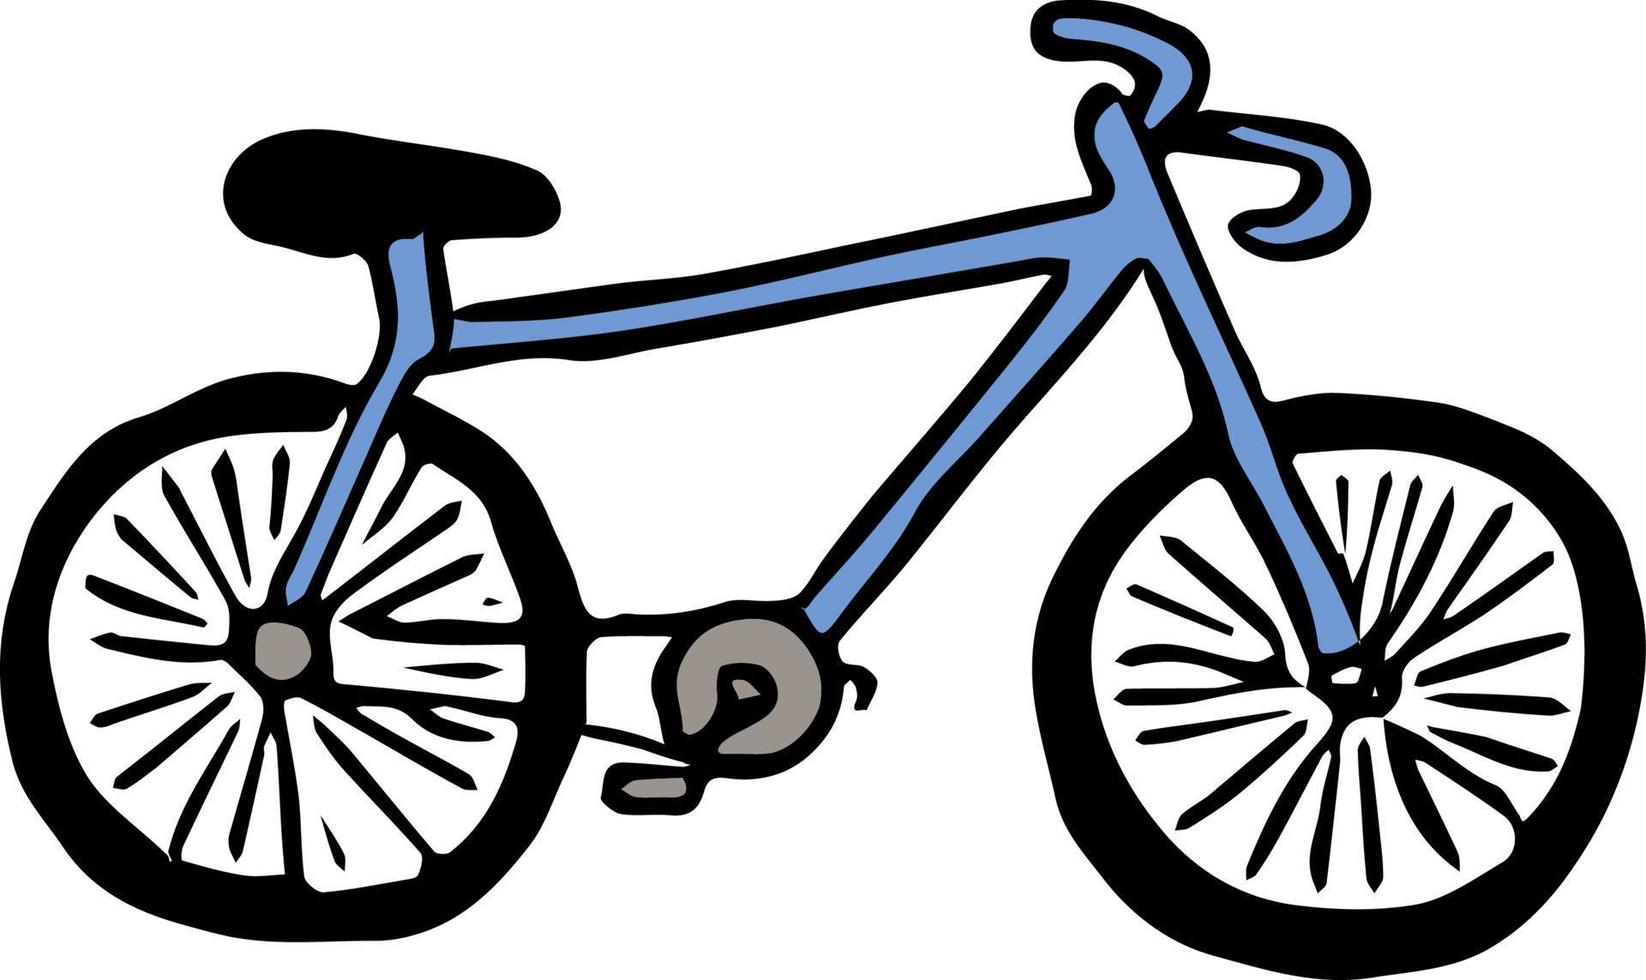 icona della bicicletta. doodle illustrazione vettoriale con la bicicletta